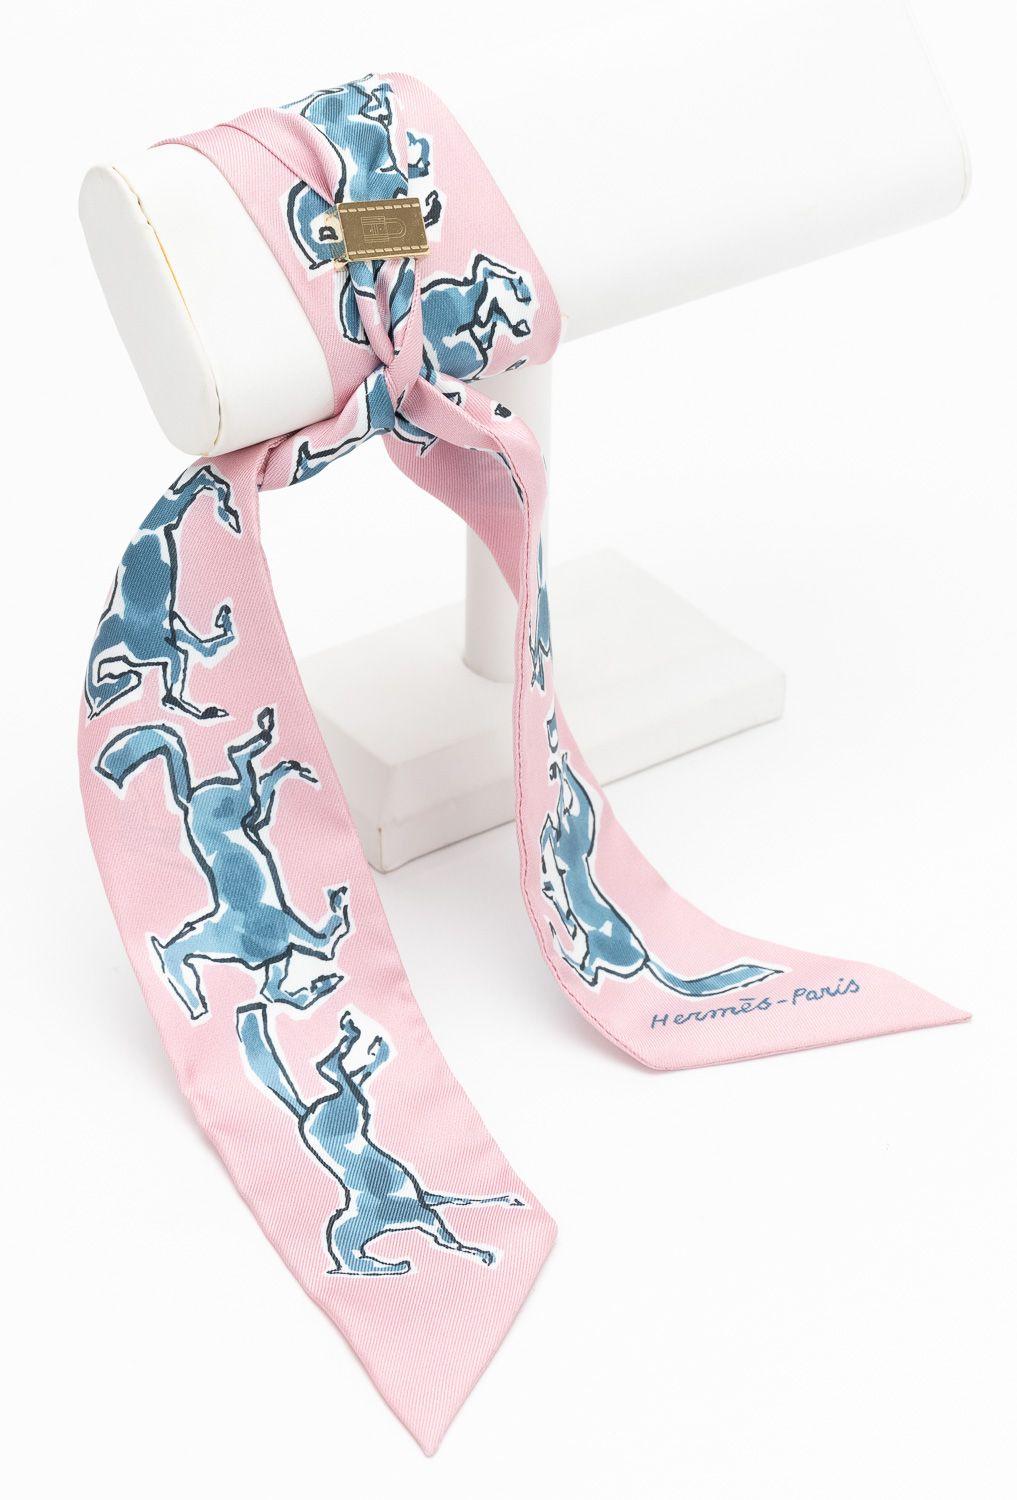 Hermès Horse Twilly en Rosé, avec glissière carrée. Le motif représente des chevaux en bleu. La pièce est en excellent état. Livré avec sa boîte d'origine 